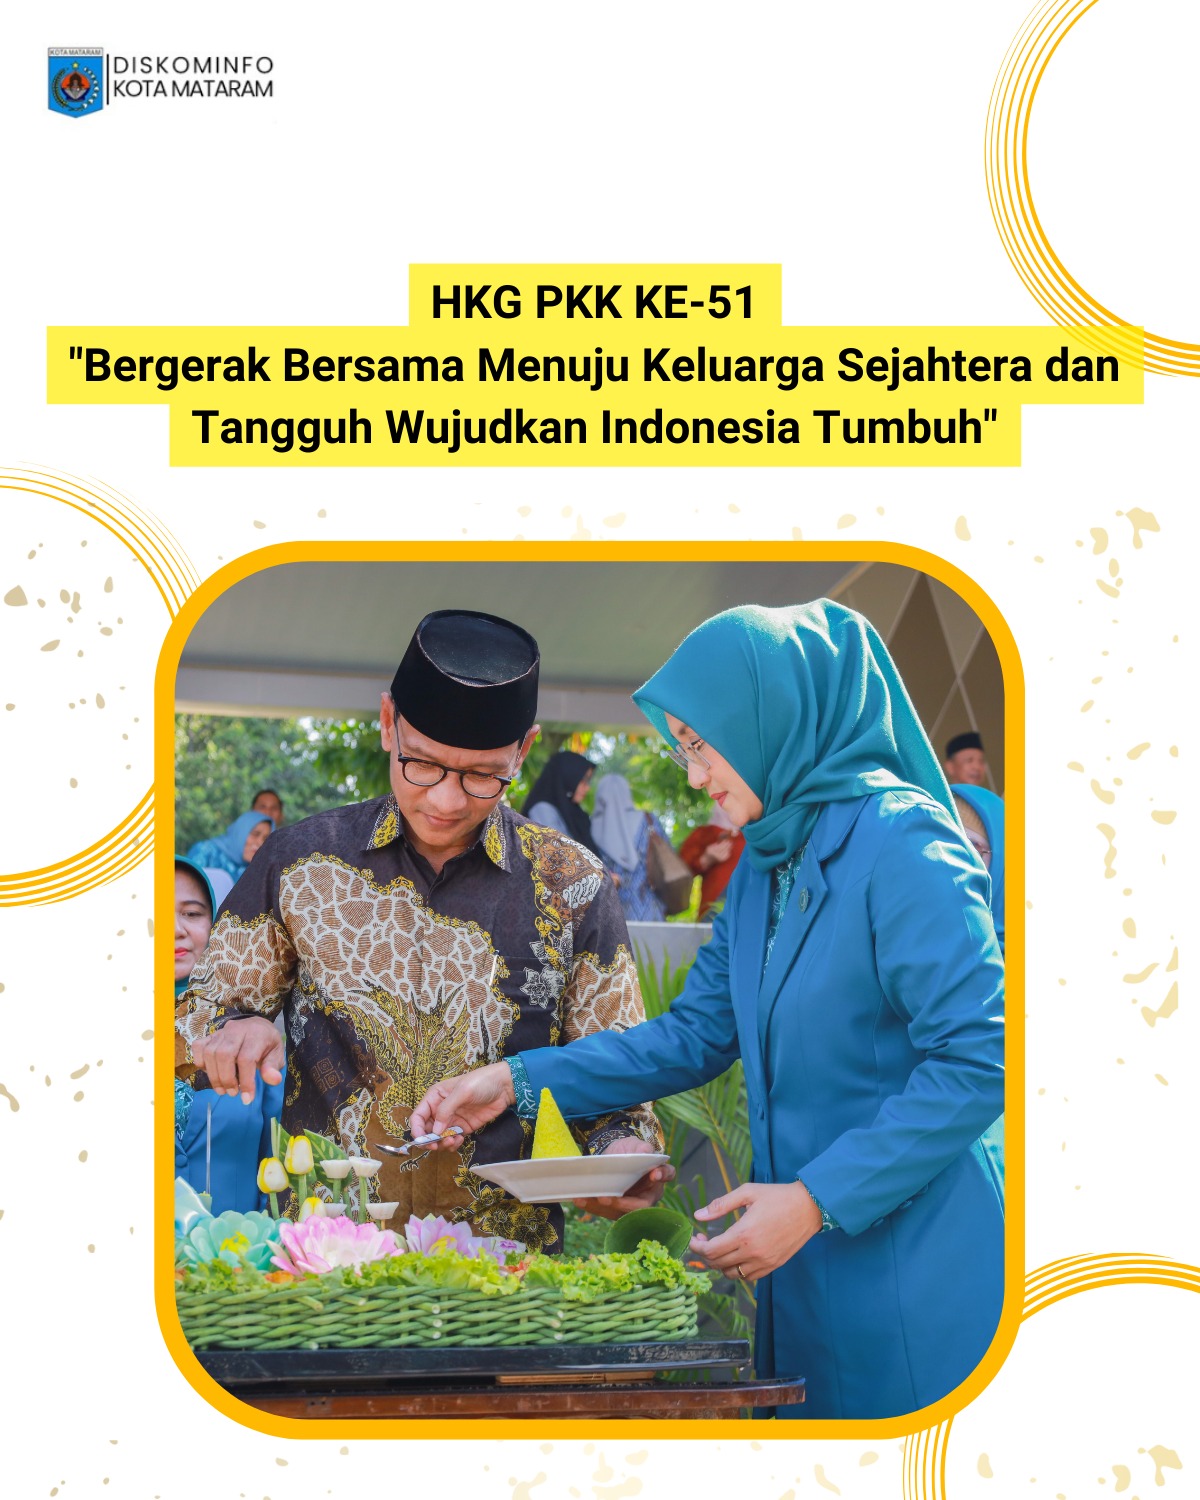 HKG PKK KE- 51 "Bergerak Bersama Menuju Keluarga Sejahtera dan Tangguh Wujudkan Indonesia Tumbuh”.